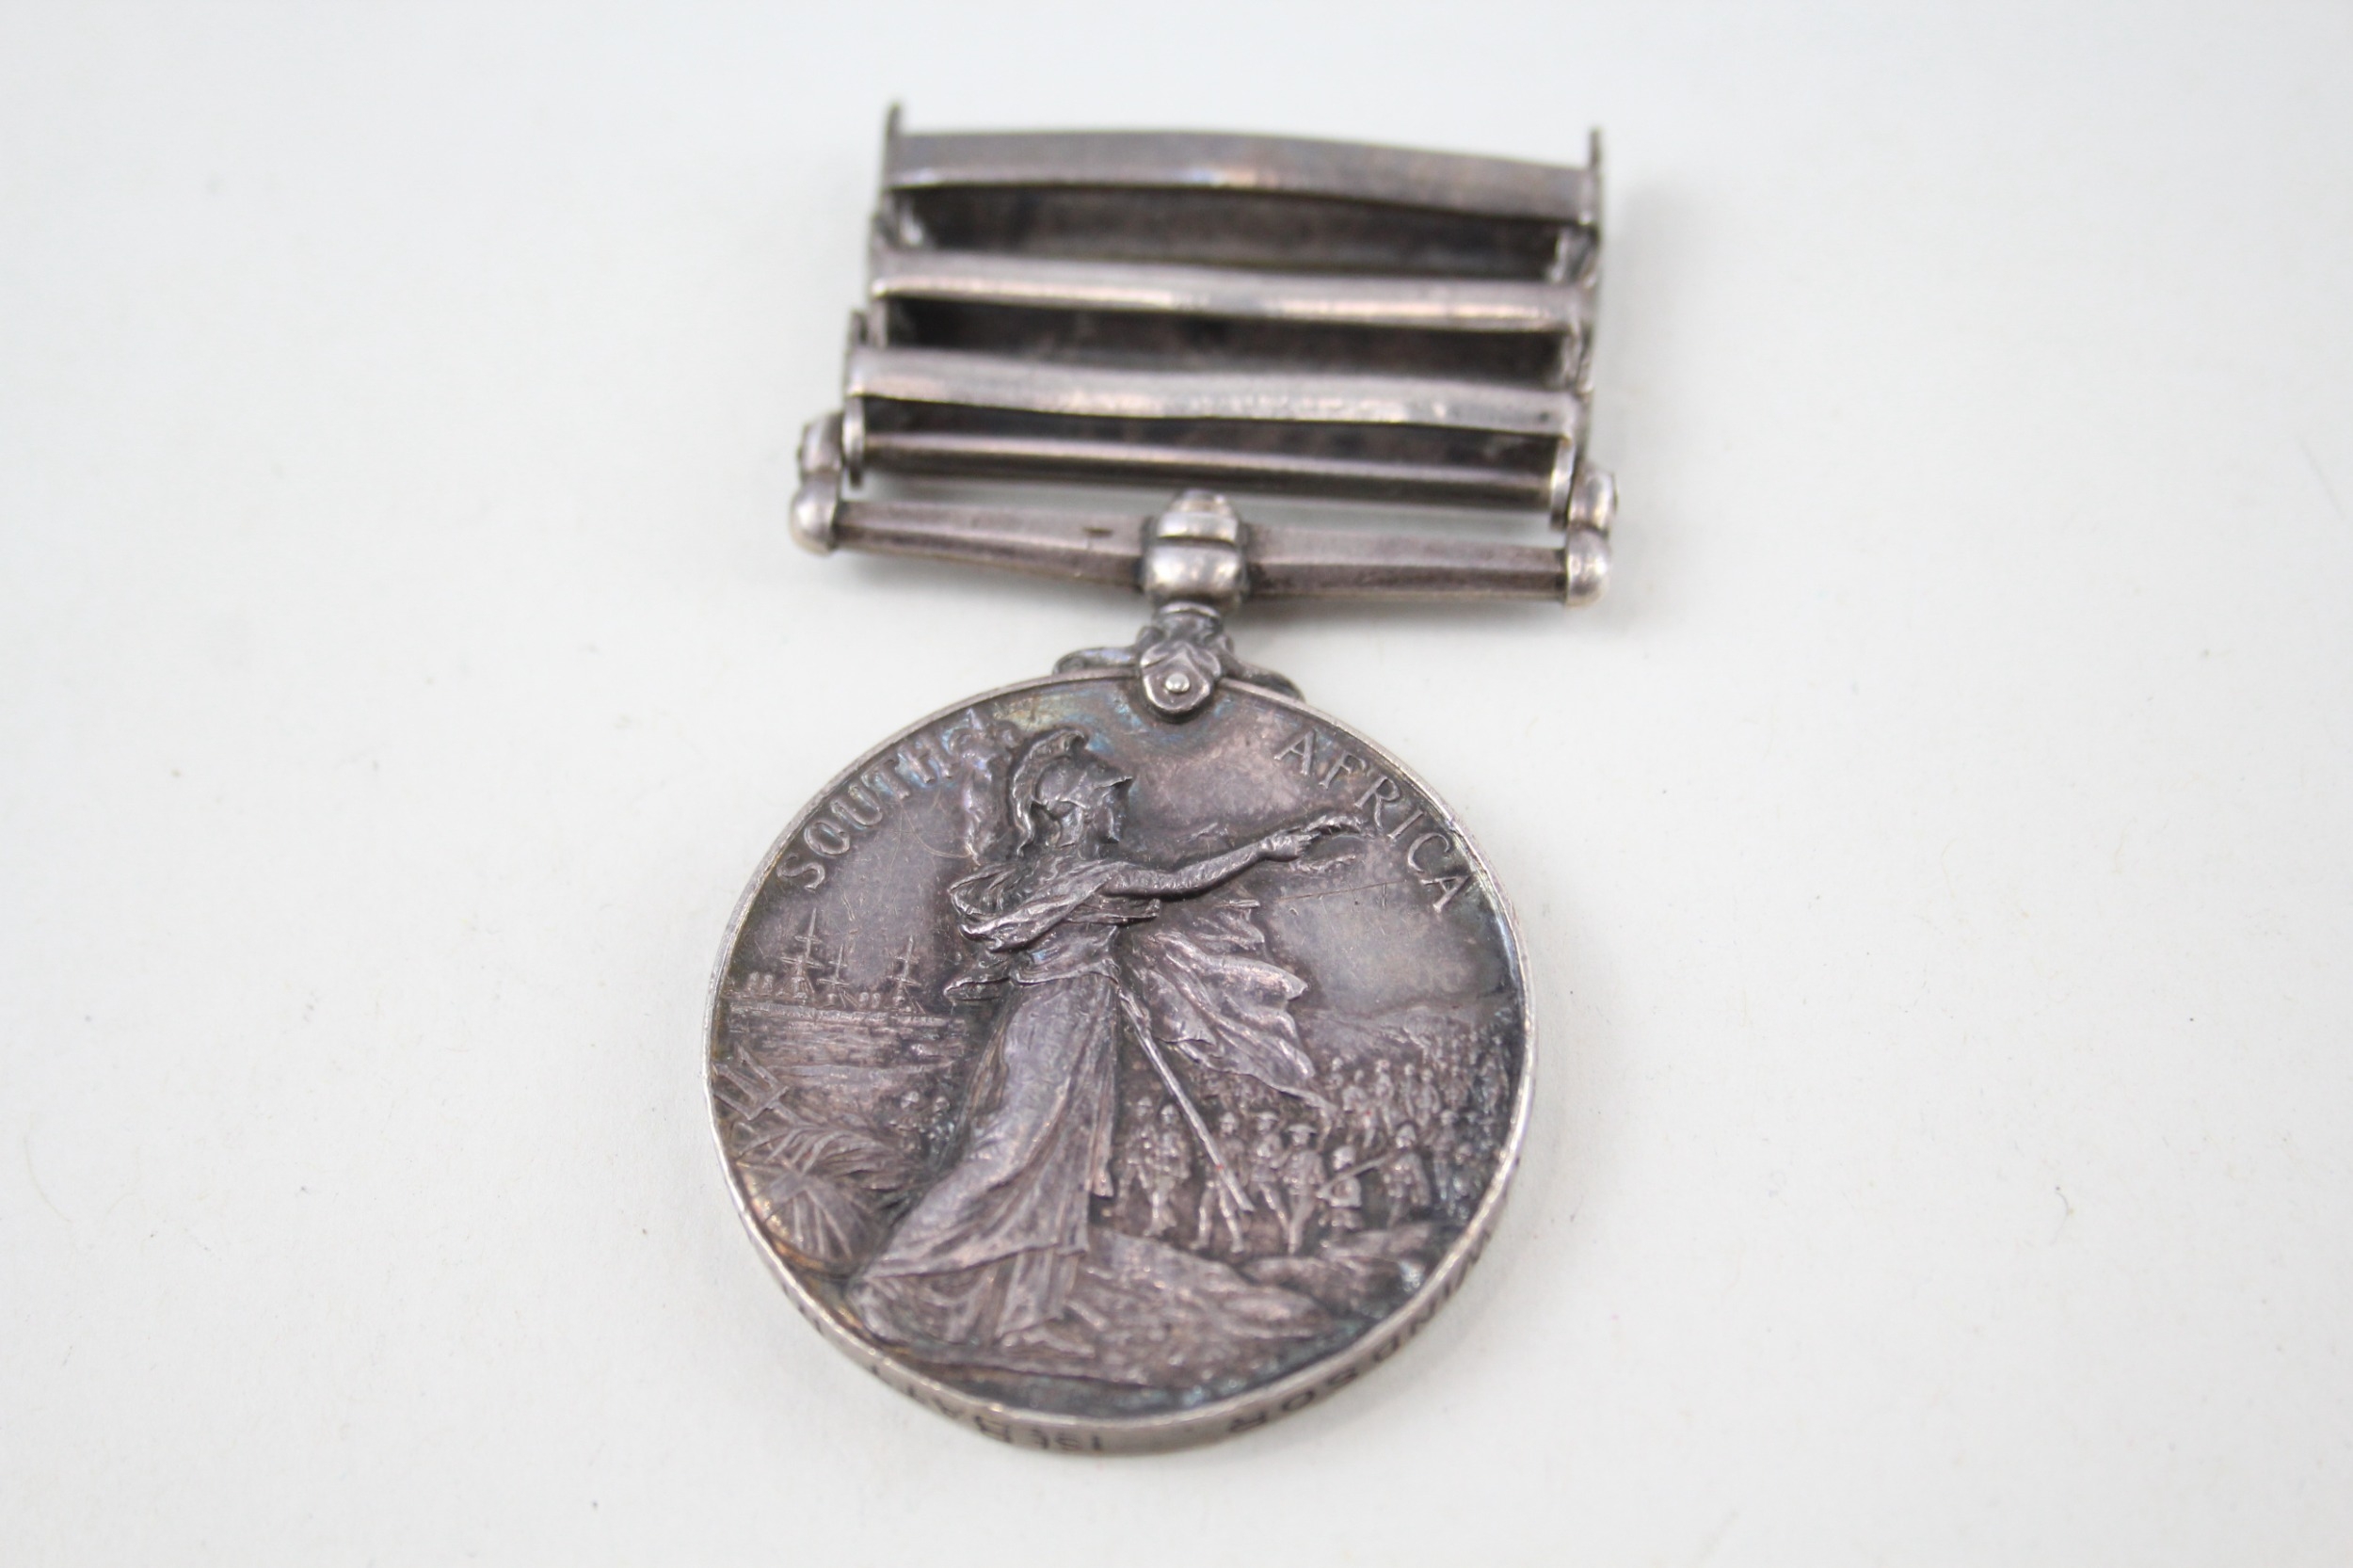 Boer War Queens South Africa Medal Named 2908 C. Windsor - Image 4 of 6